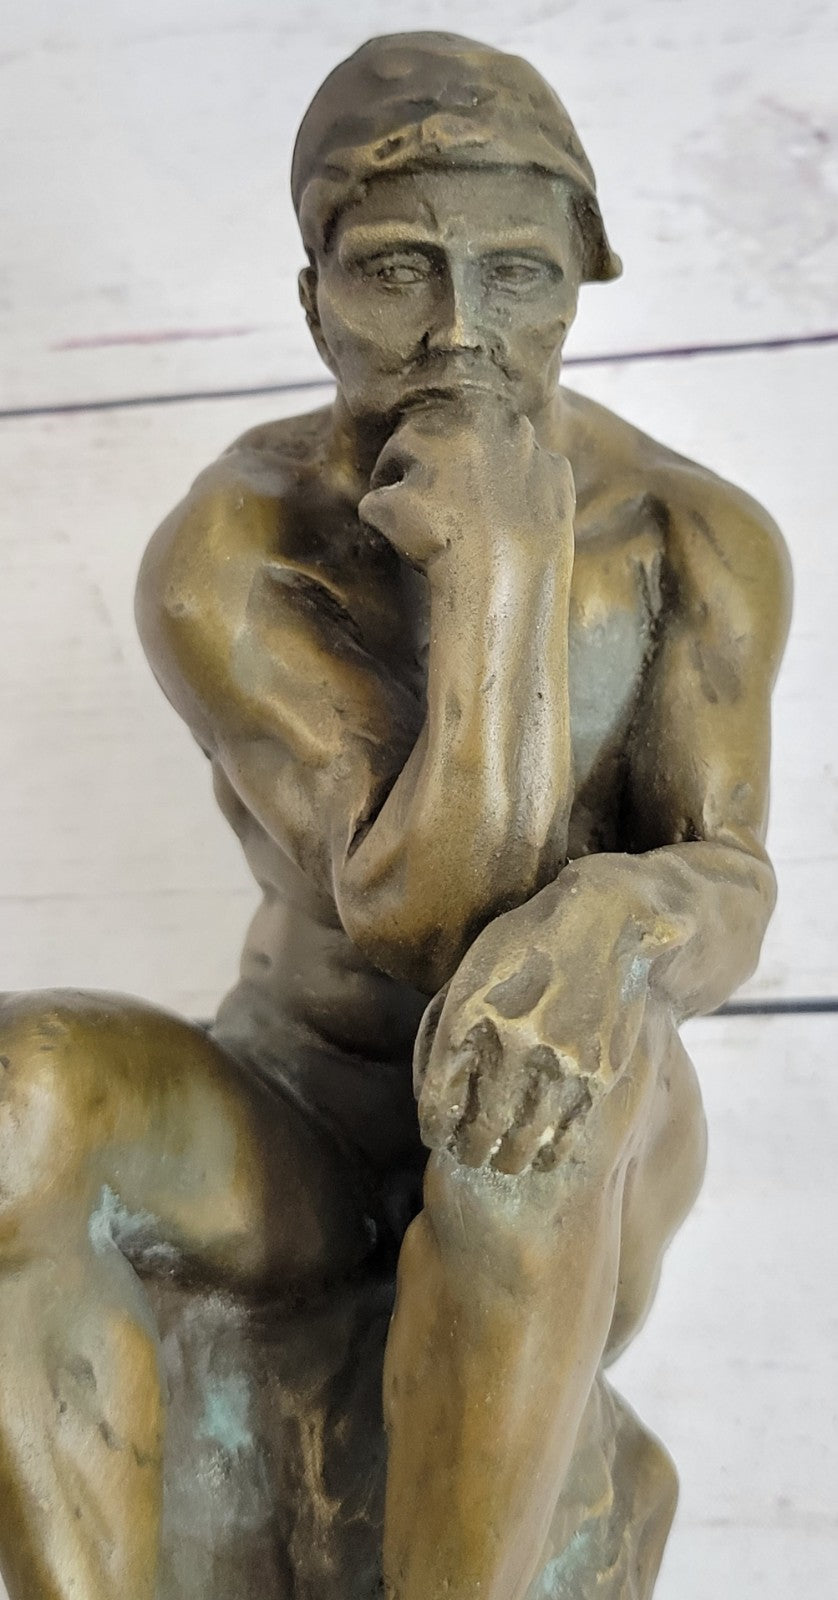 Bronze Sculpture Statue 10" The Thinker Rodin Sculpture Museum Reproduction Sale